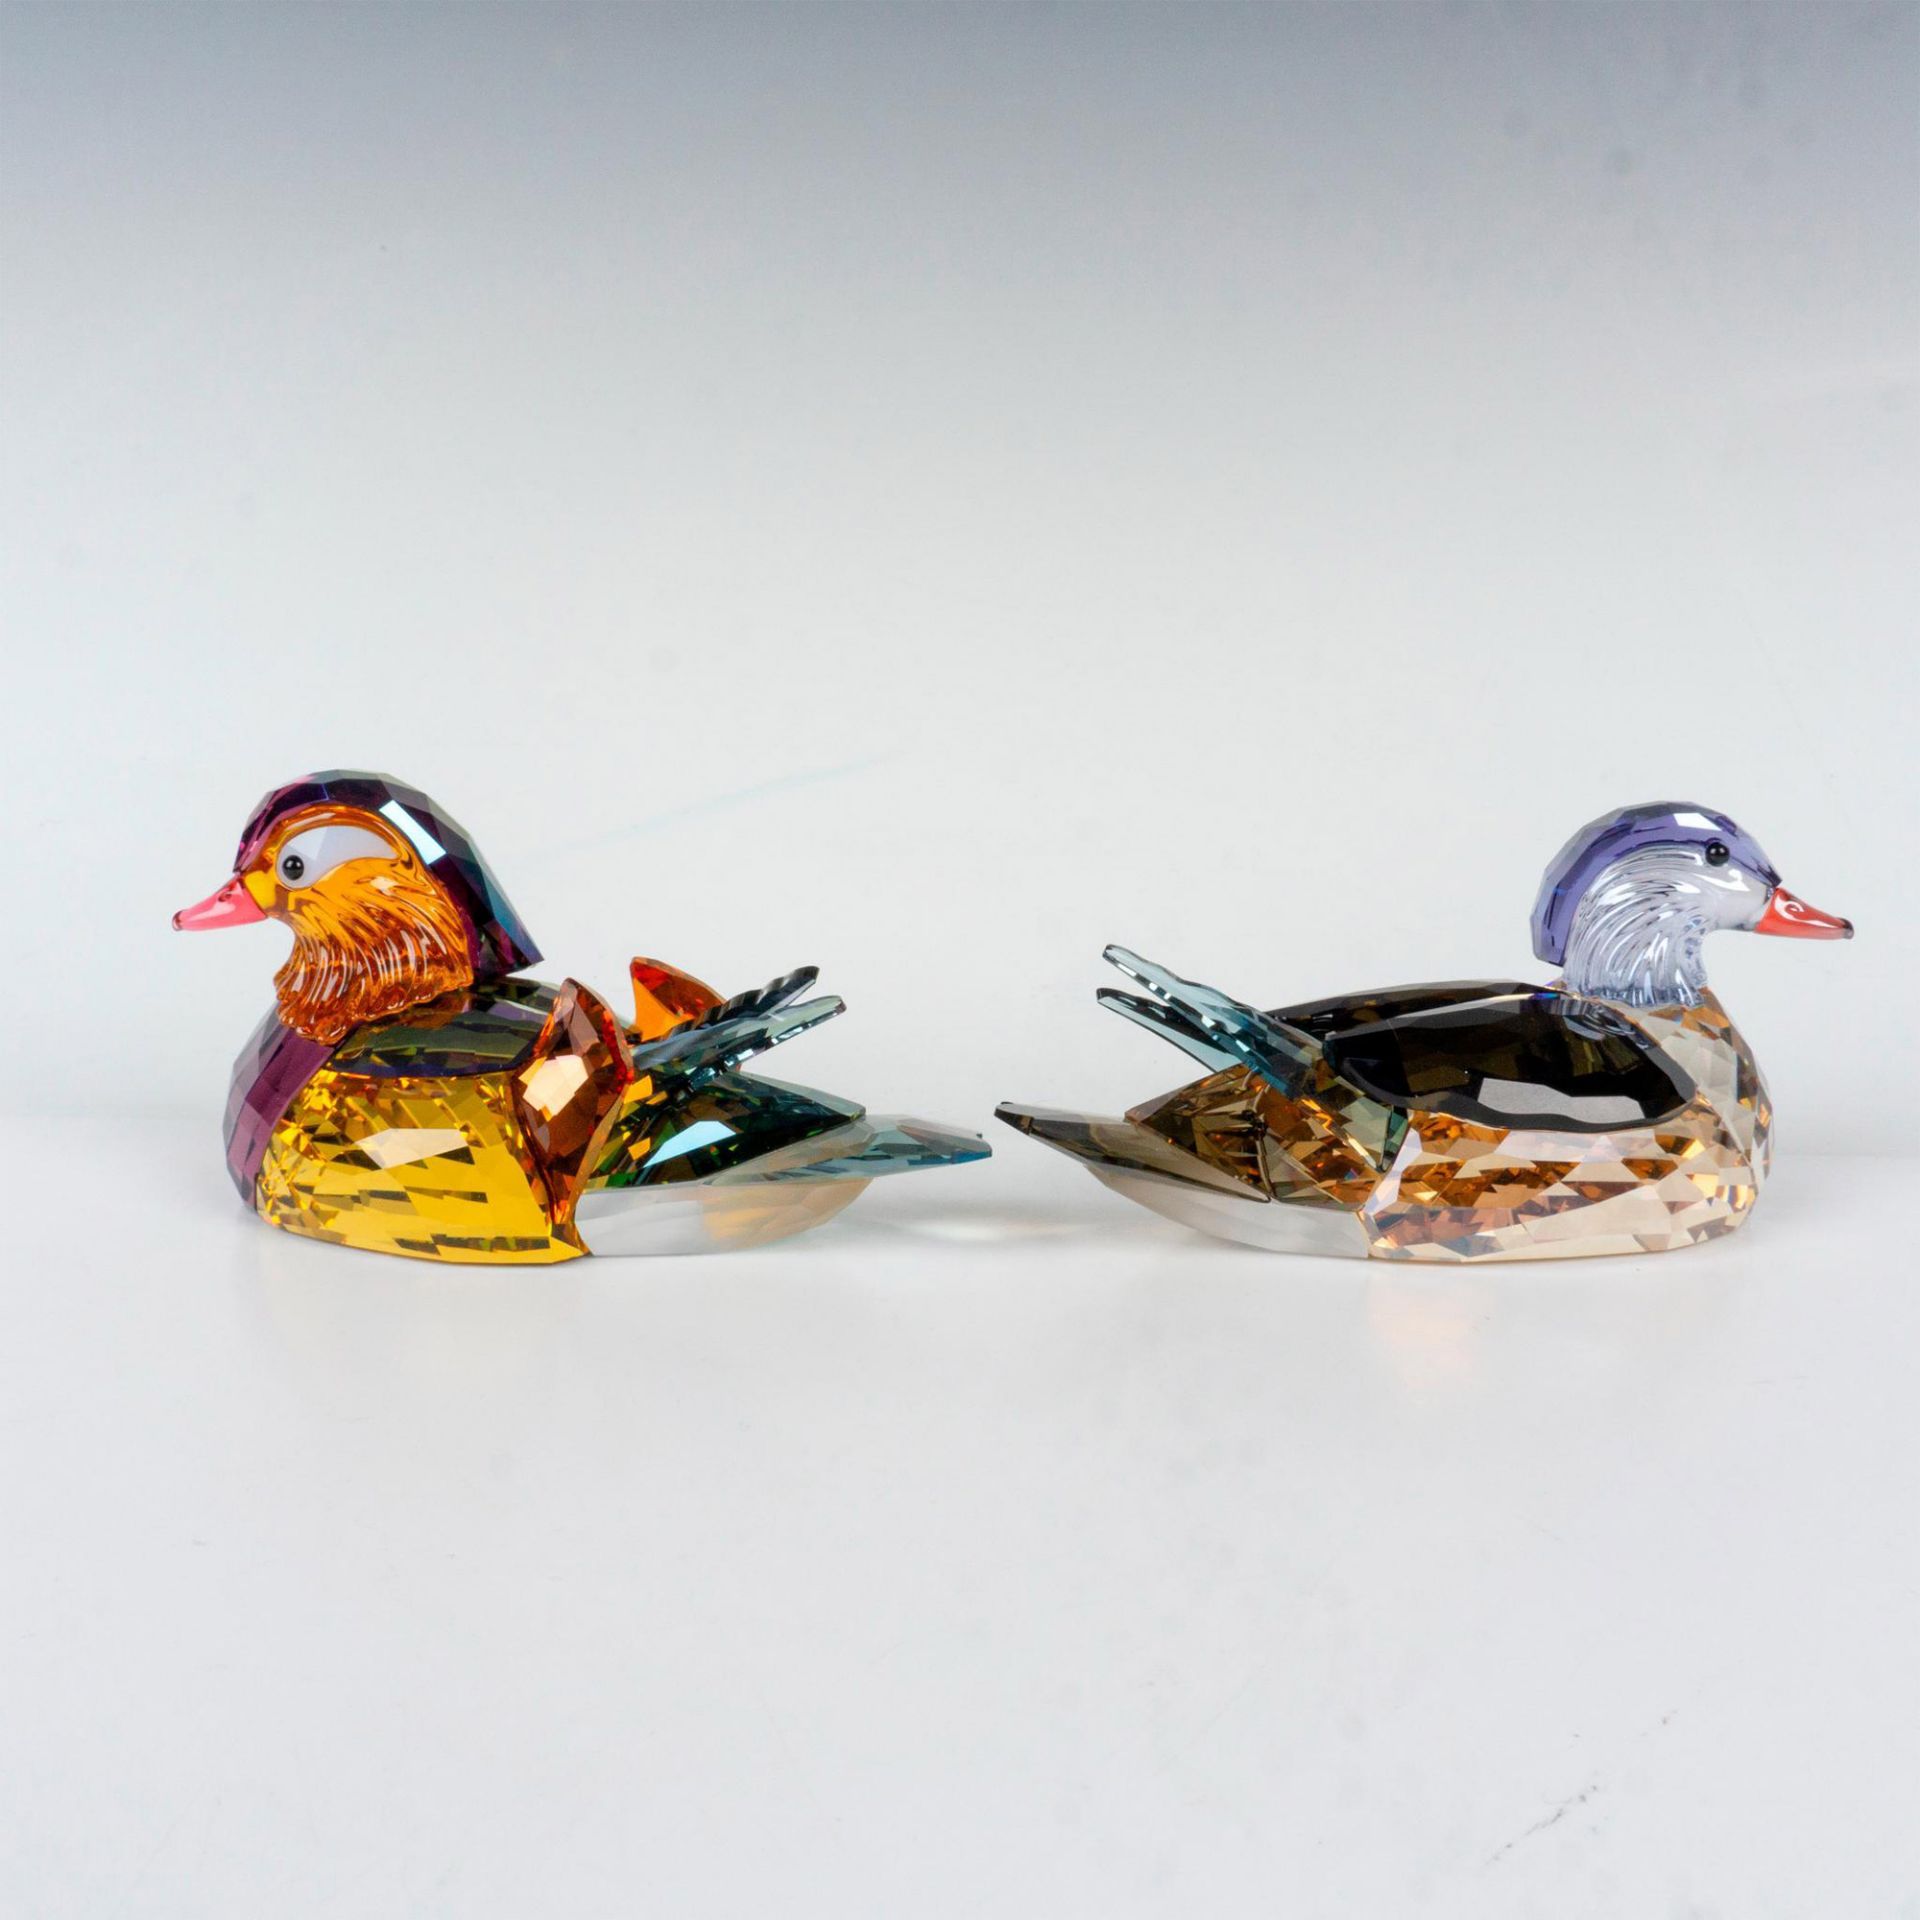 Swarovski Crystal Figurines, Mandarin Ducks - Image 2 of 4